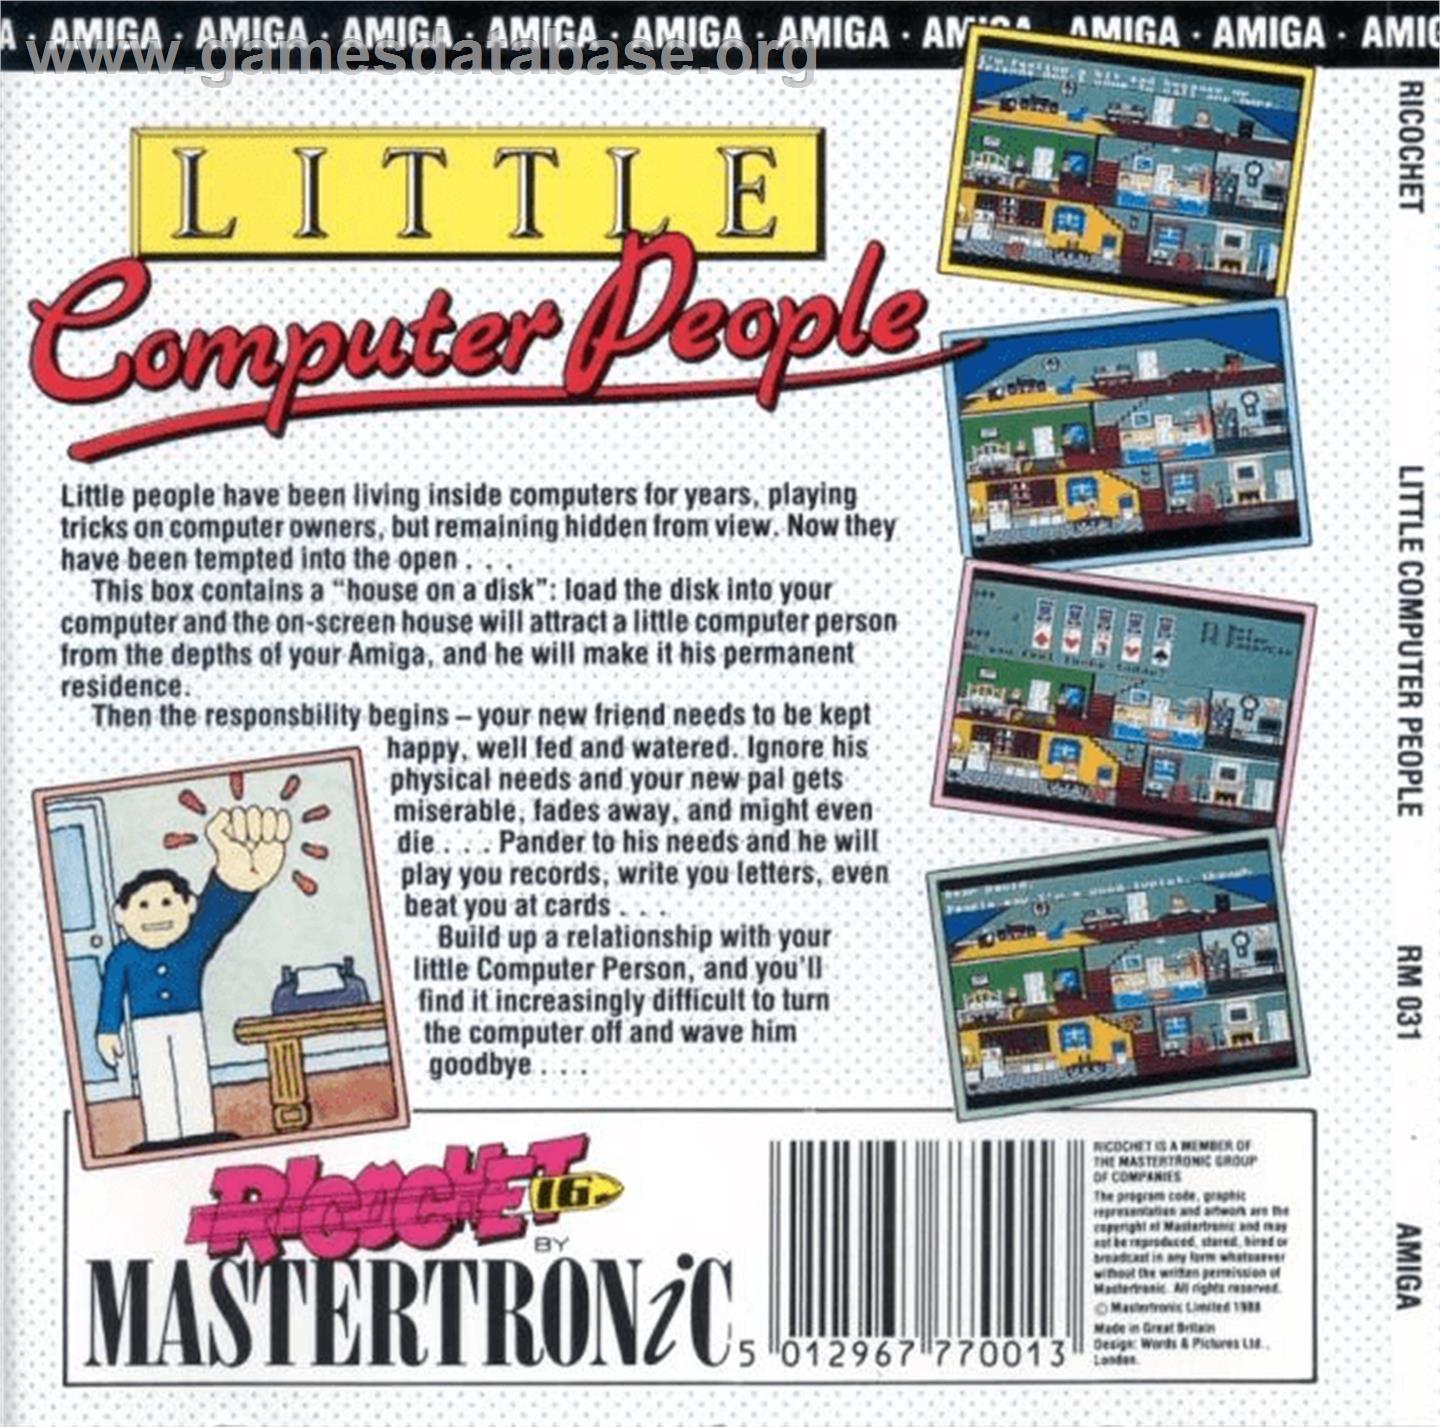 Little Computer People - Commodore Amiga - Artwork - Box Back